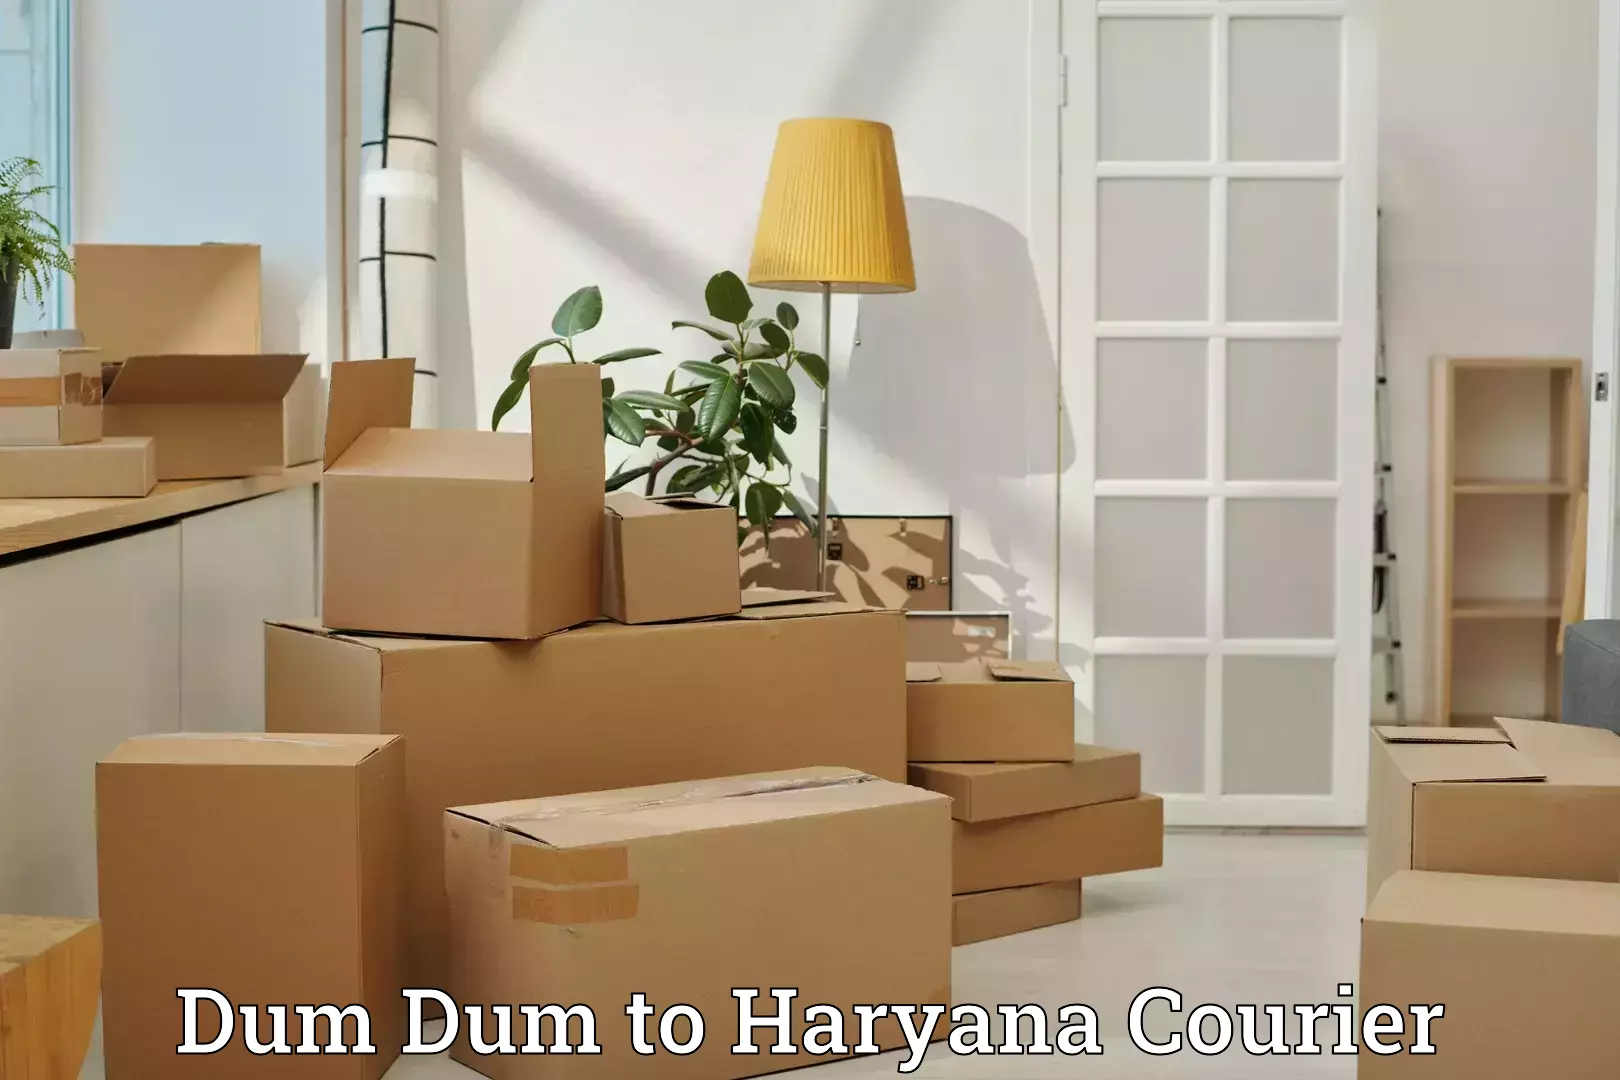 Luggage shipment specialists Dum Dum to Bhiwani